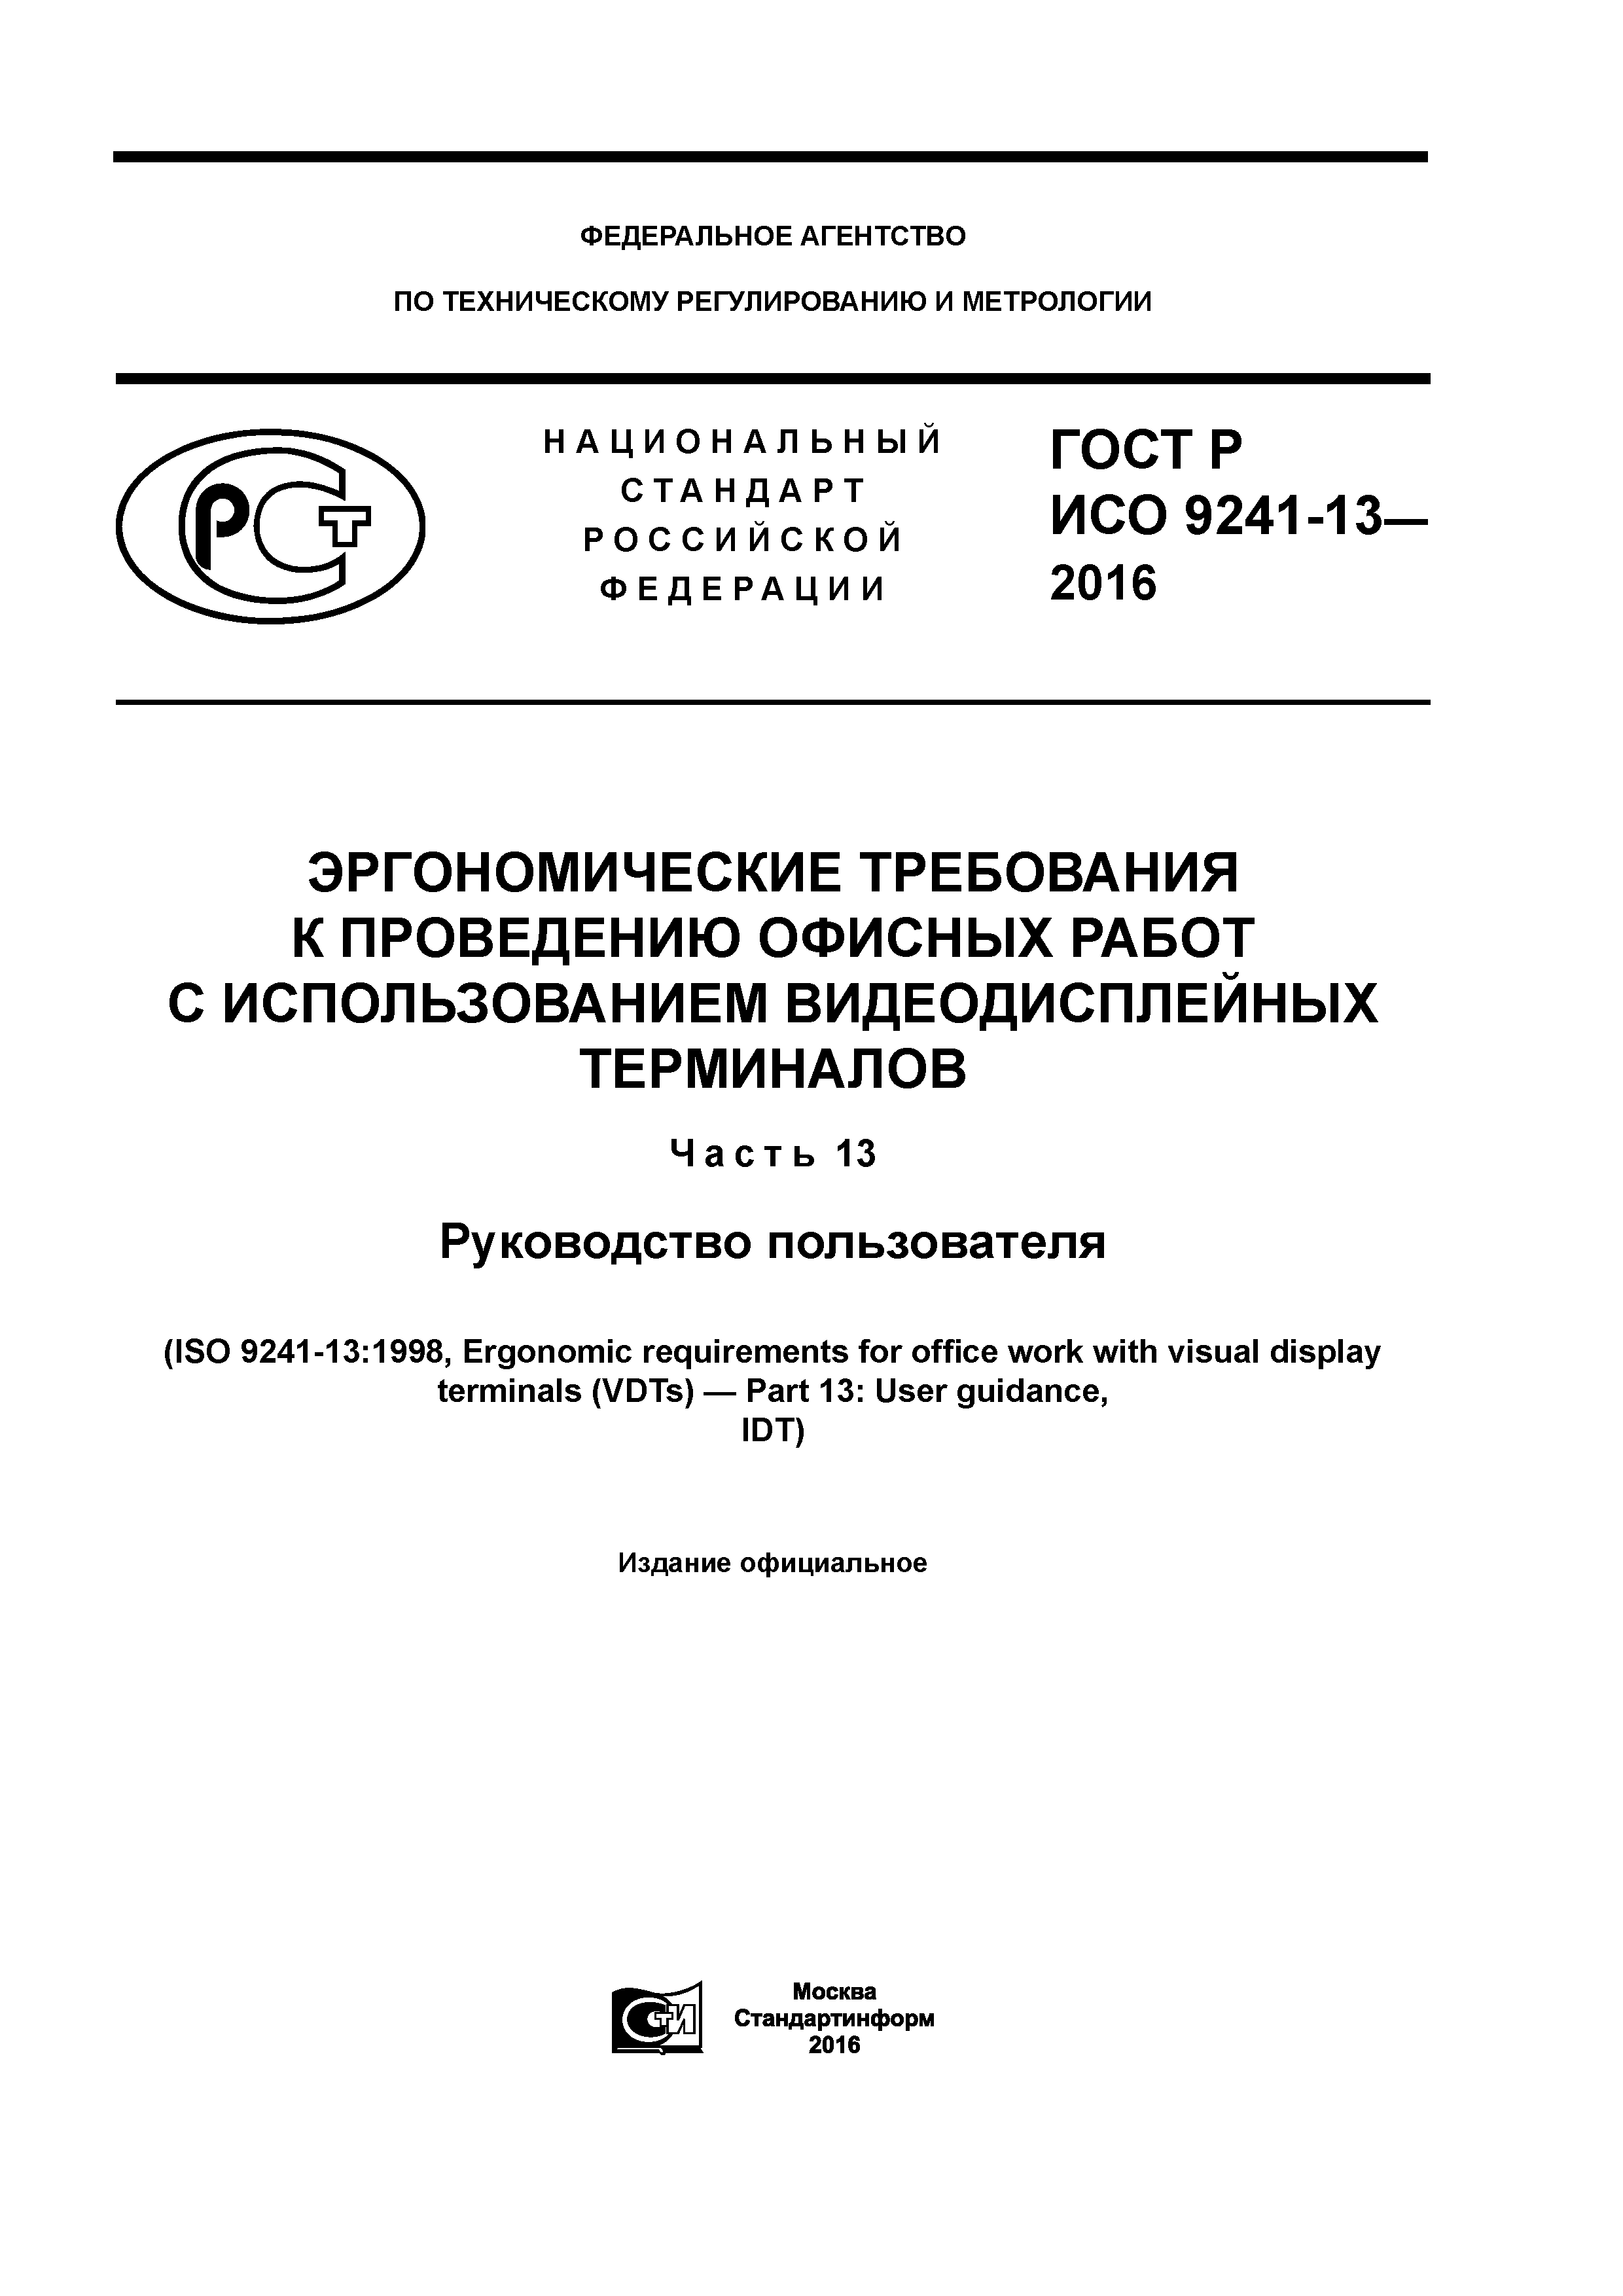 ГОСТ Р ИСО 9241-13-2016